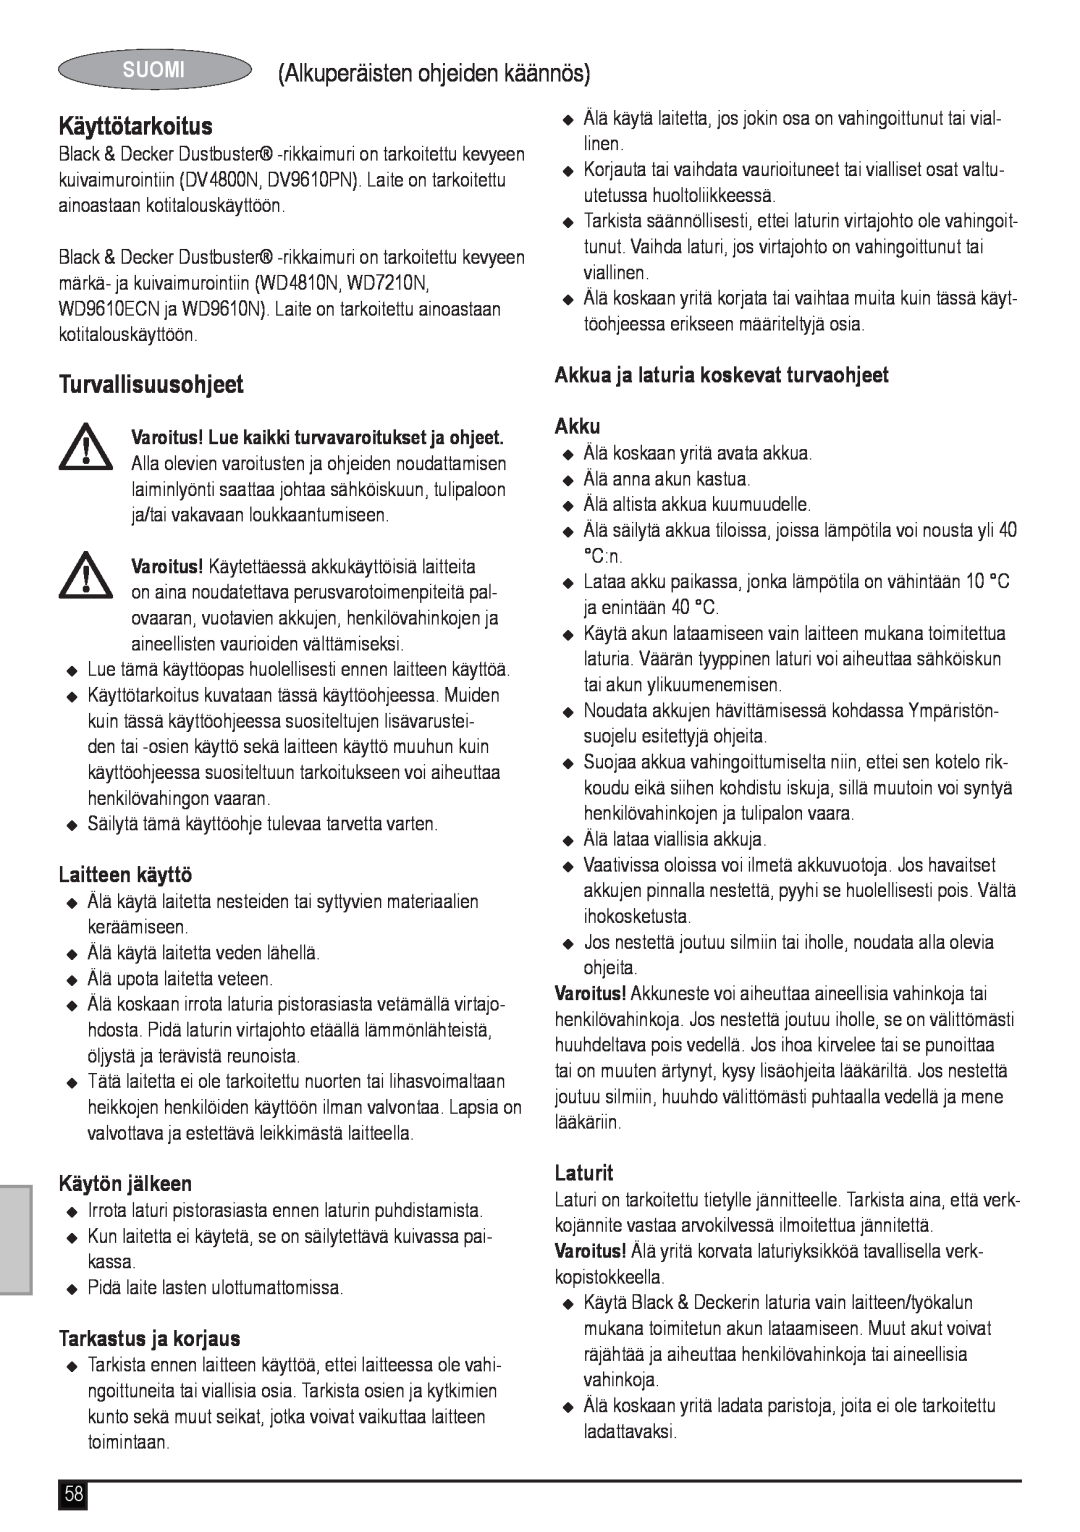 Black & Decker WD7210N Alkuperäisten ohjeiden käännös, Käyttötarkoitus, Suomi, Laitteen käyttö, Käytön jälkeen, Laturit 